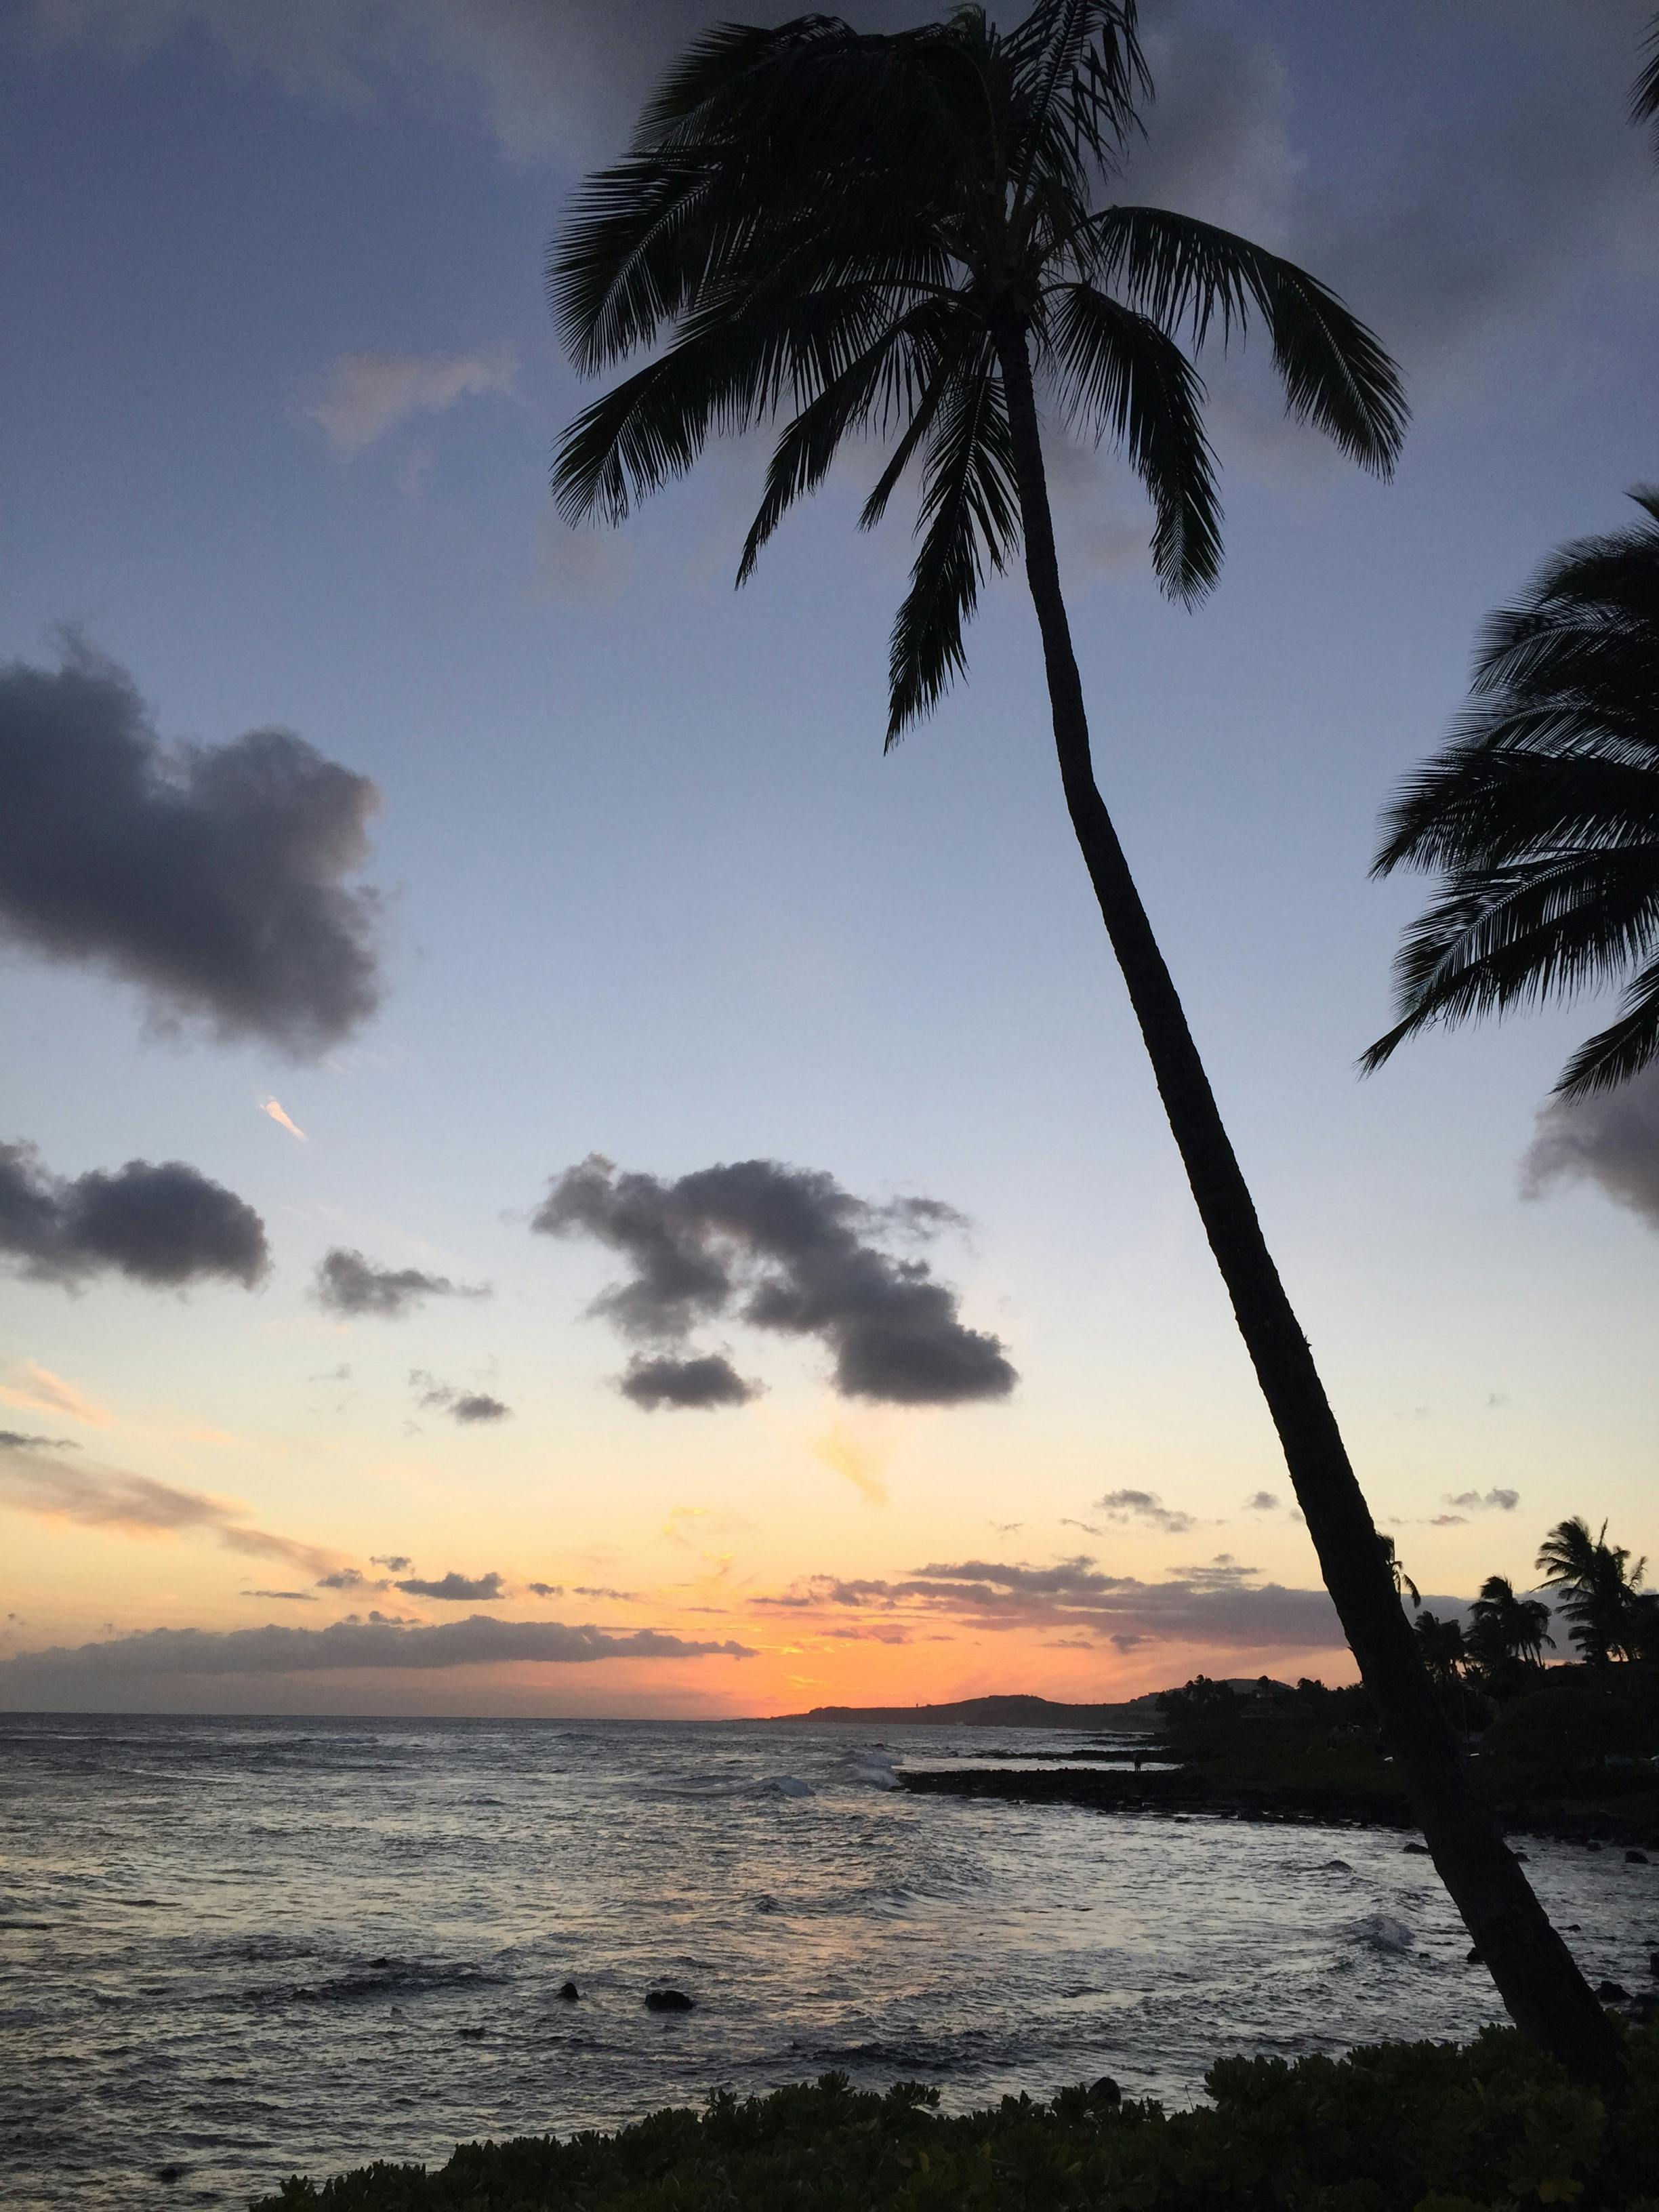 + ảnh đẹp nhất về Hawaii · Tải xuống miễn phí 100% · Ảnh có sẵn của  Pexels